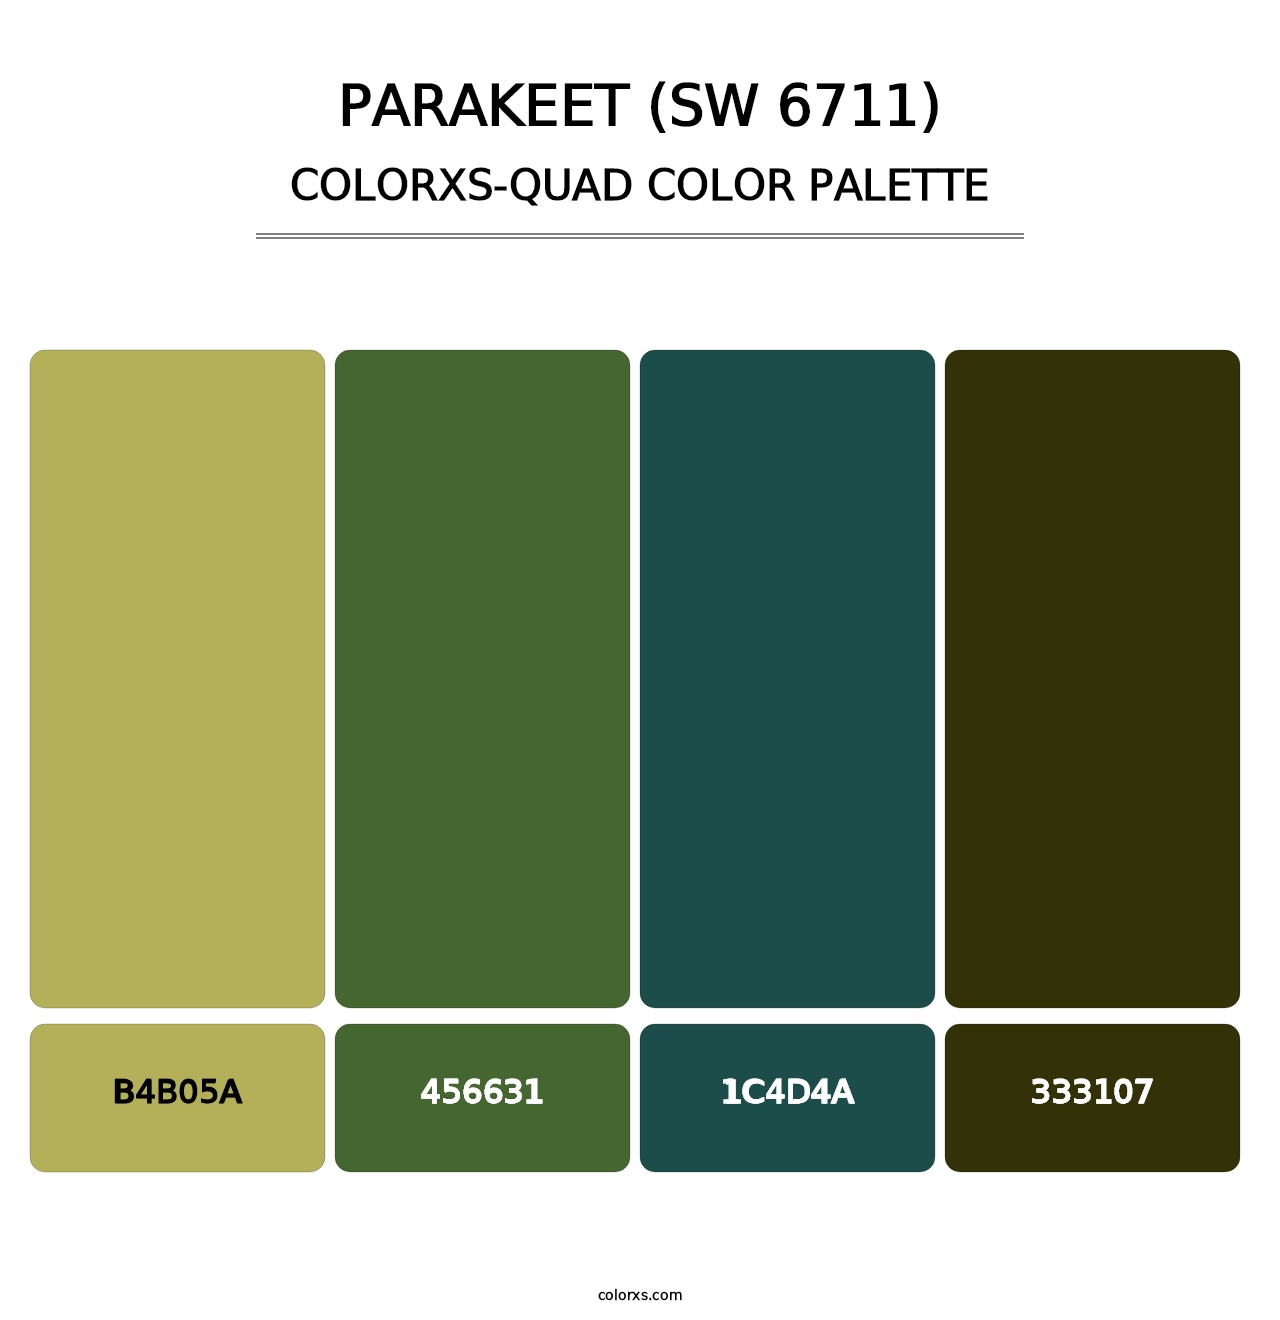 Parakeet (SW 6711) - Colorxs Quad Palette